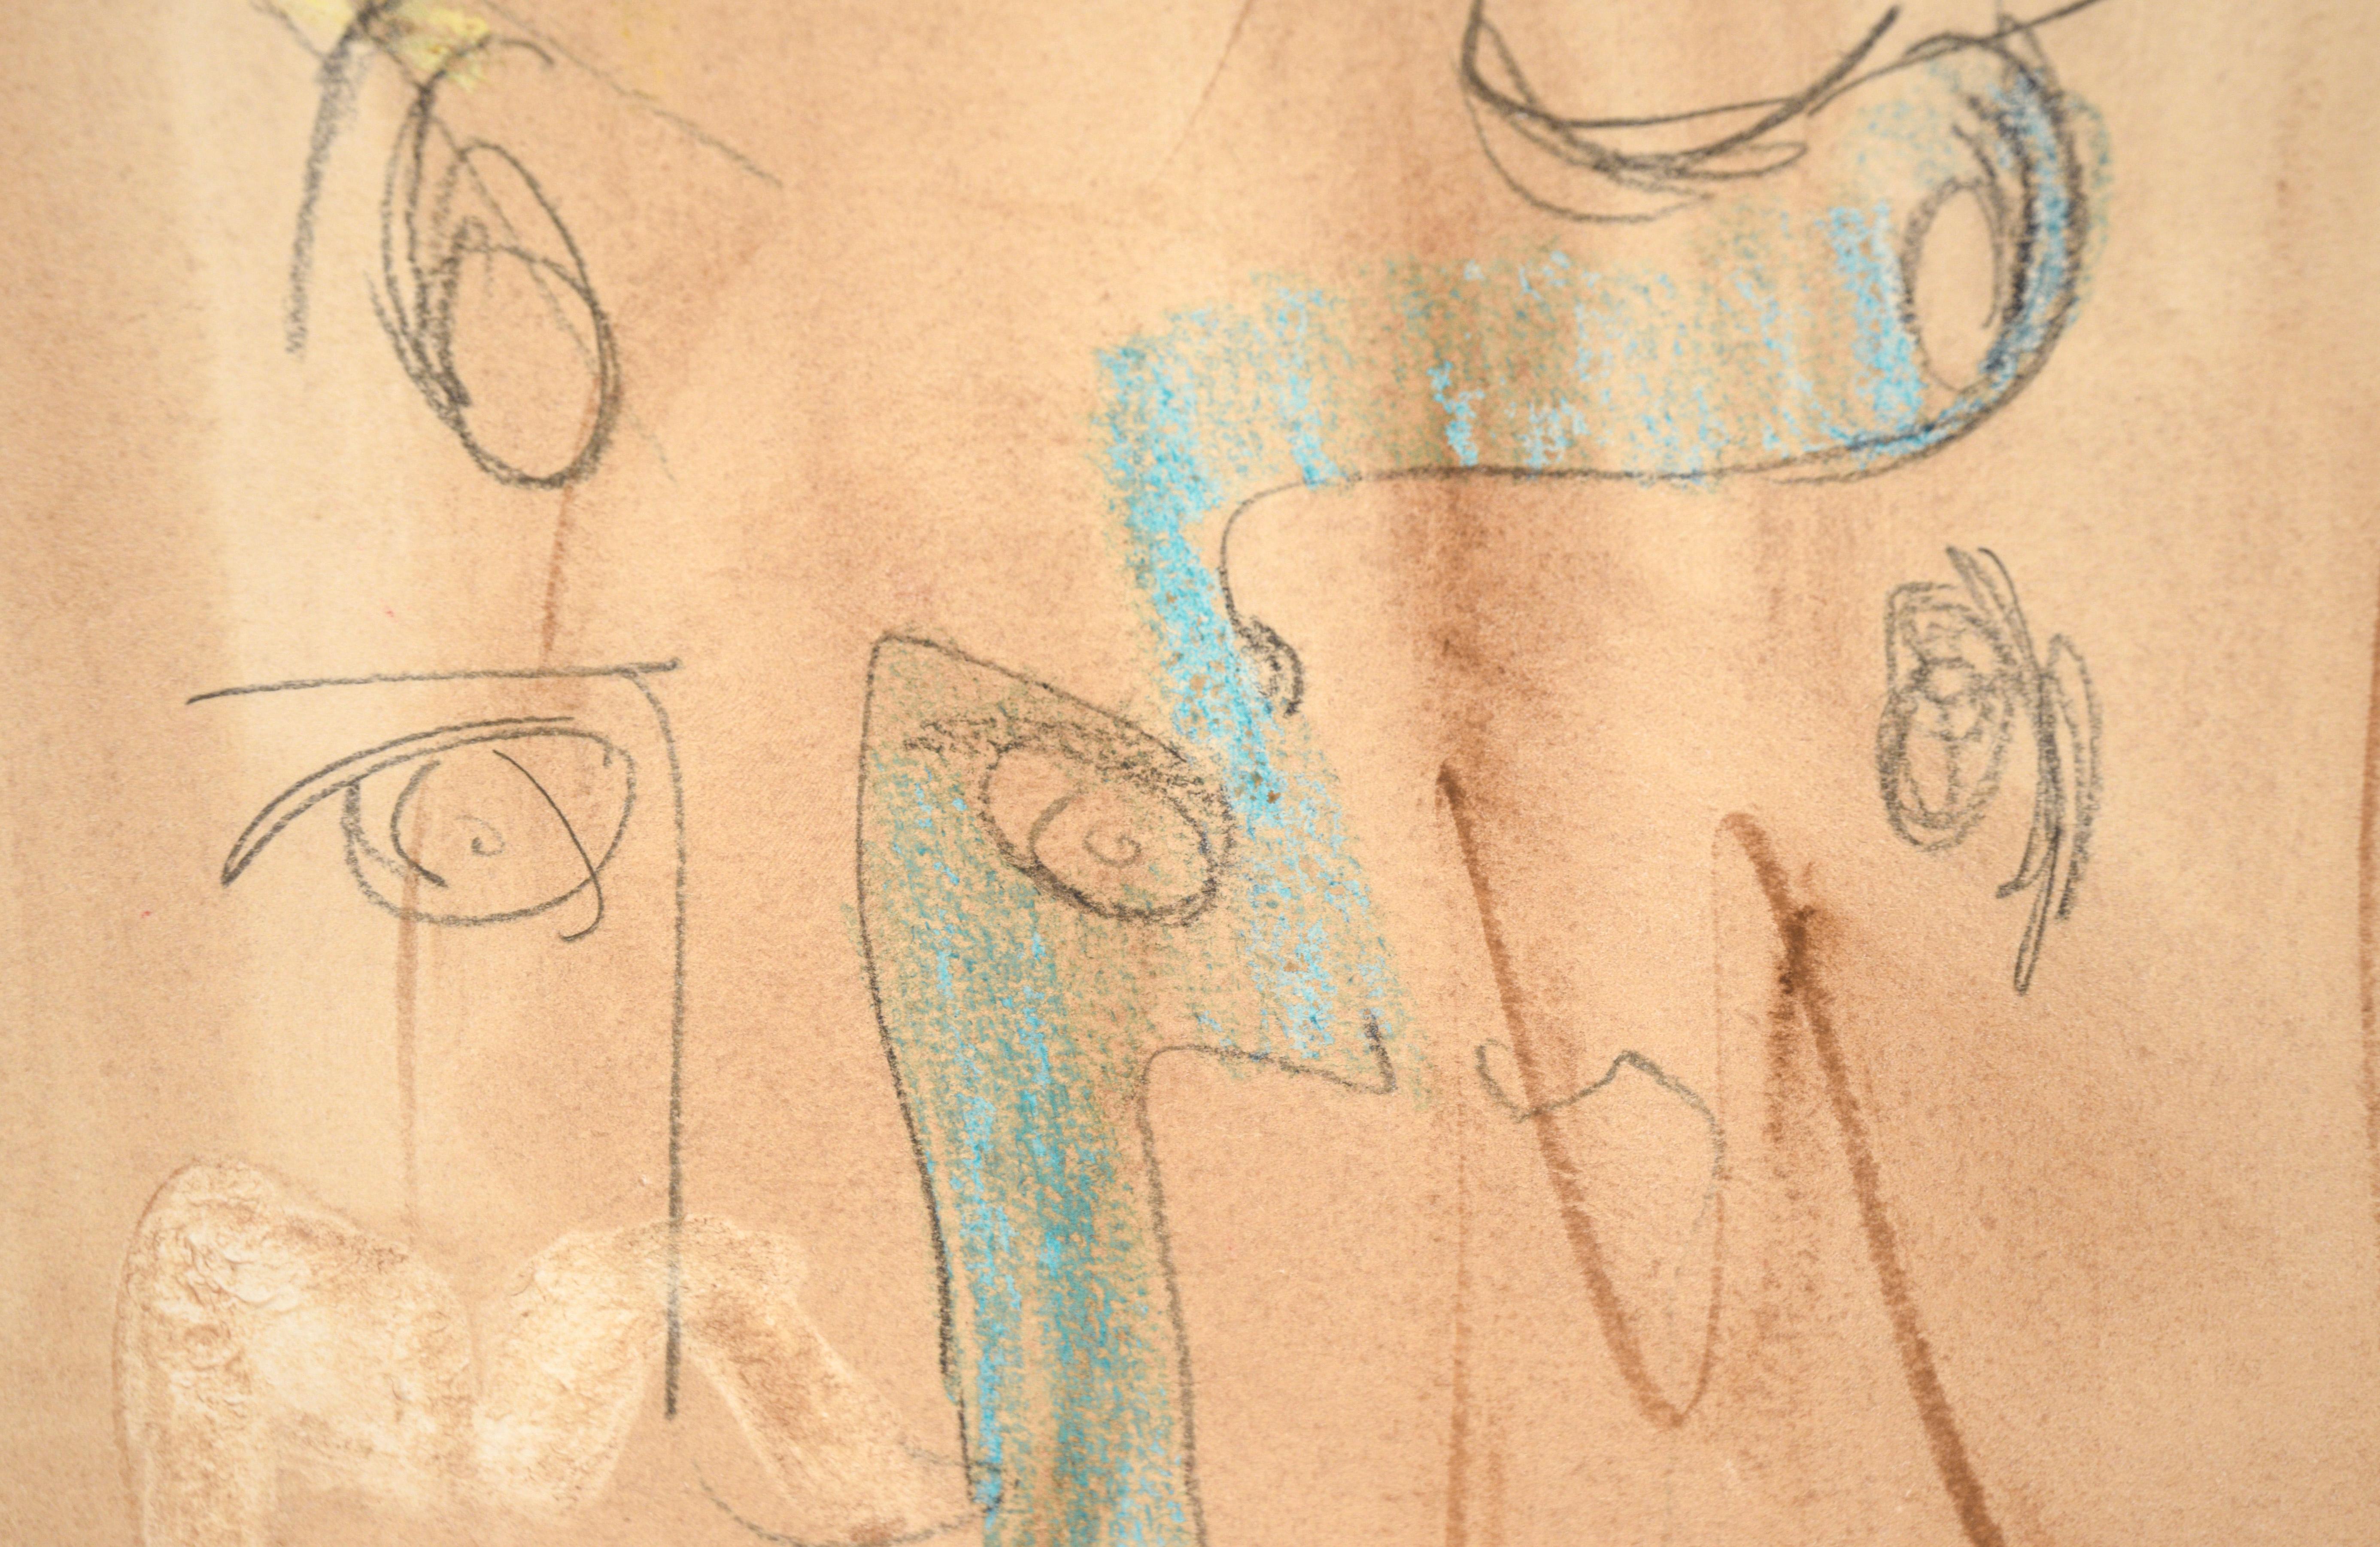 Aquarelle abstraite « The Eyes Have It » (Les yeux l'ont ») et crayon sur papier

Peinture figurative fantaisiste de l'artiste californien Ricardo de Silva (Brésilien, 20e siècle). Plusieurs visages se chevauchent et s'emboîtent, créant une